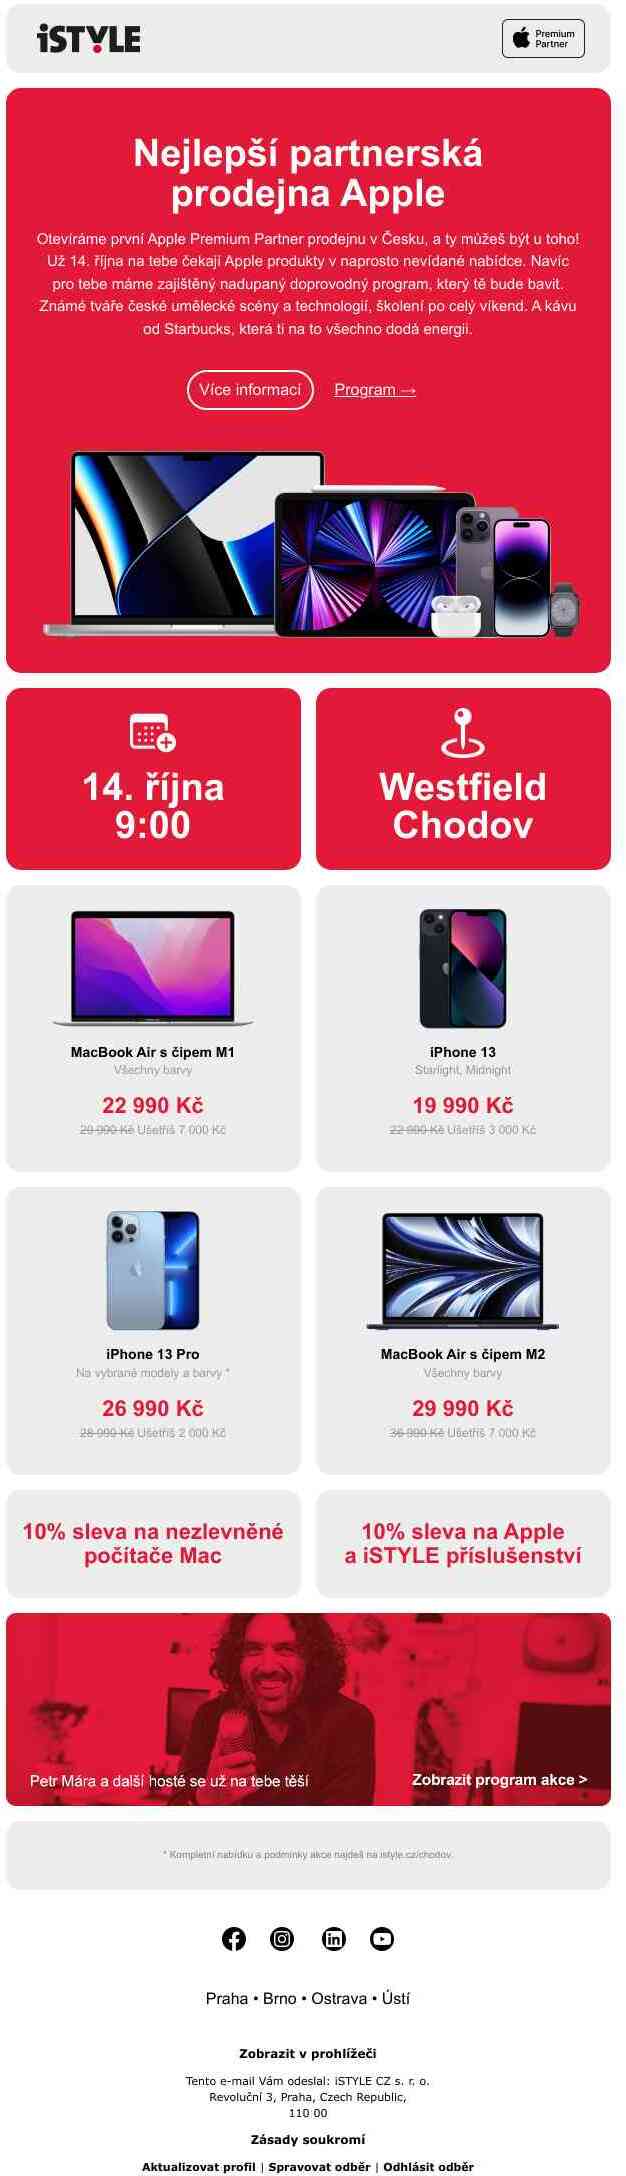 První Apple Premium Partner prodejna v Česku